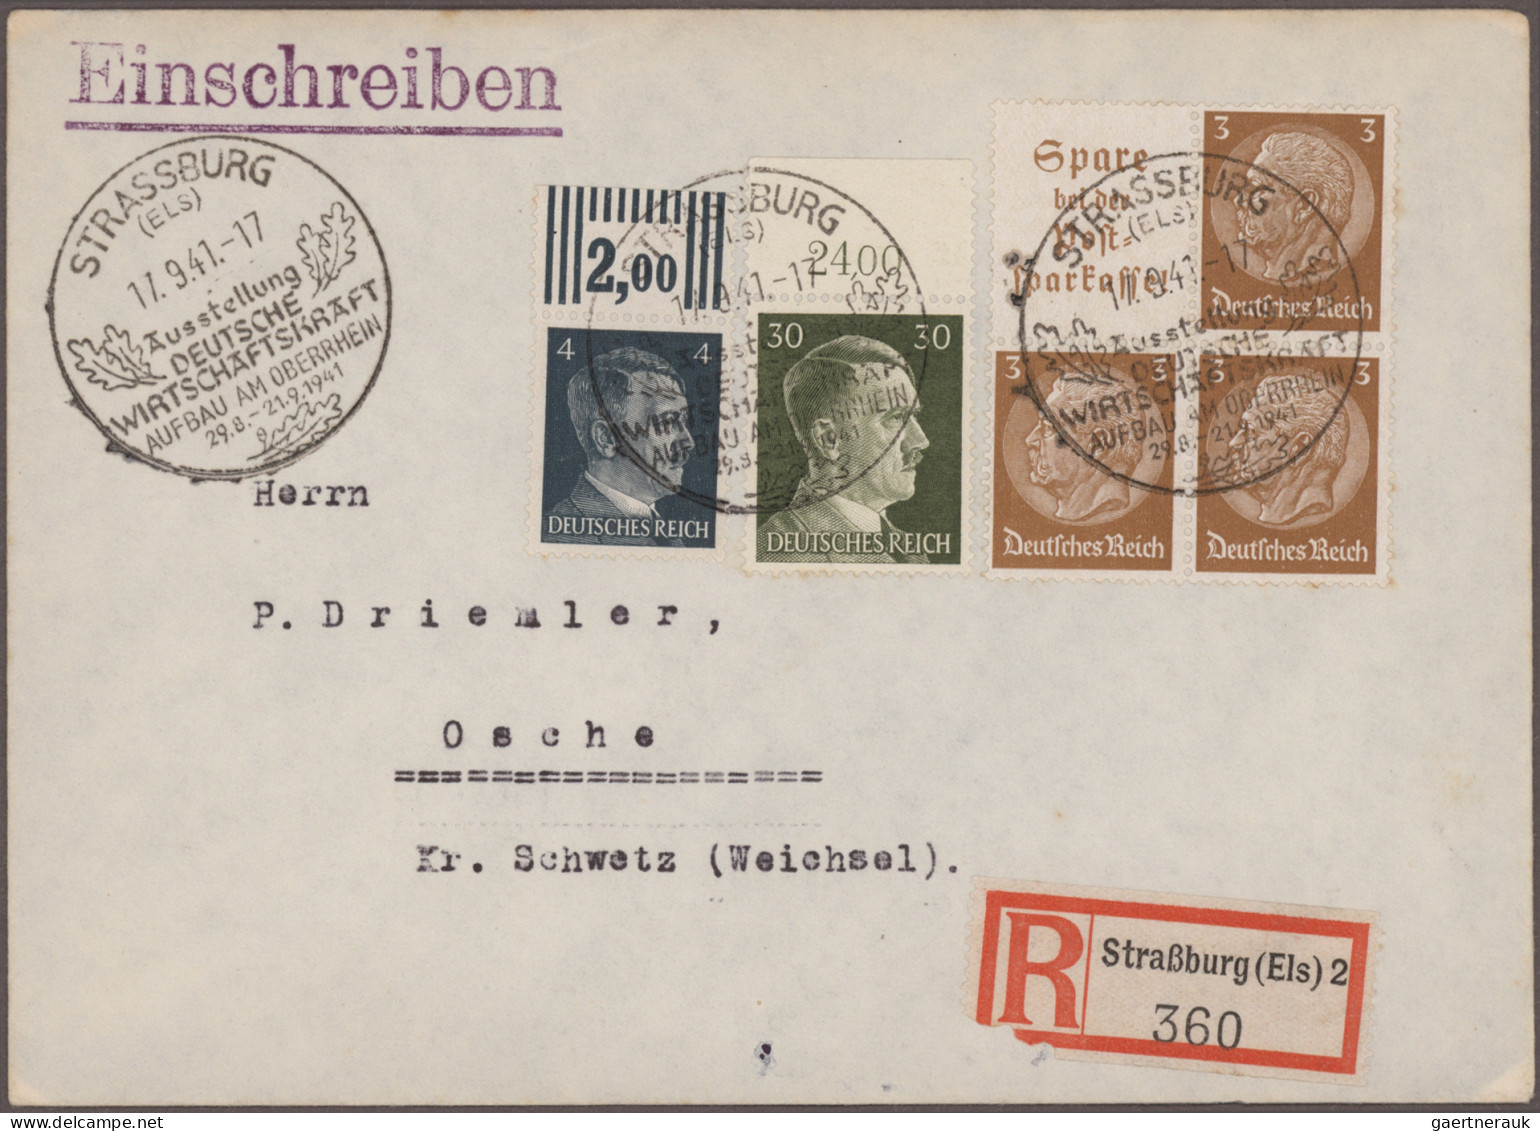 Nachlässe: Uriger Alt-Posten Briefe und Karten mit nur Dt.Reich und auch Bayern,